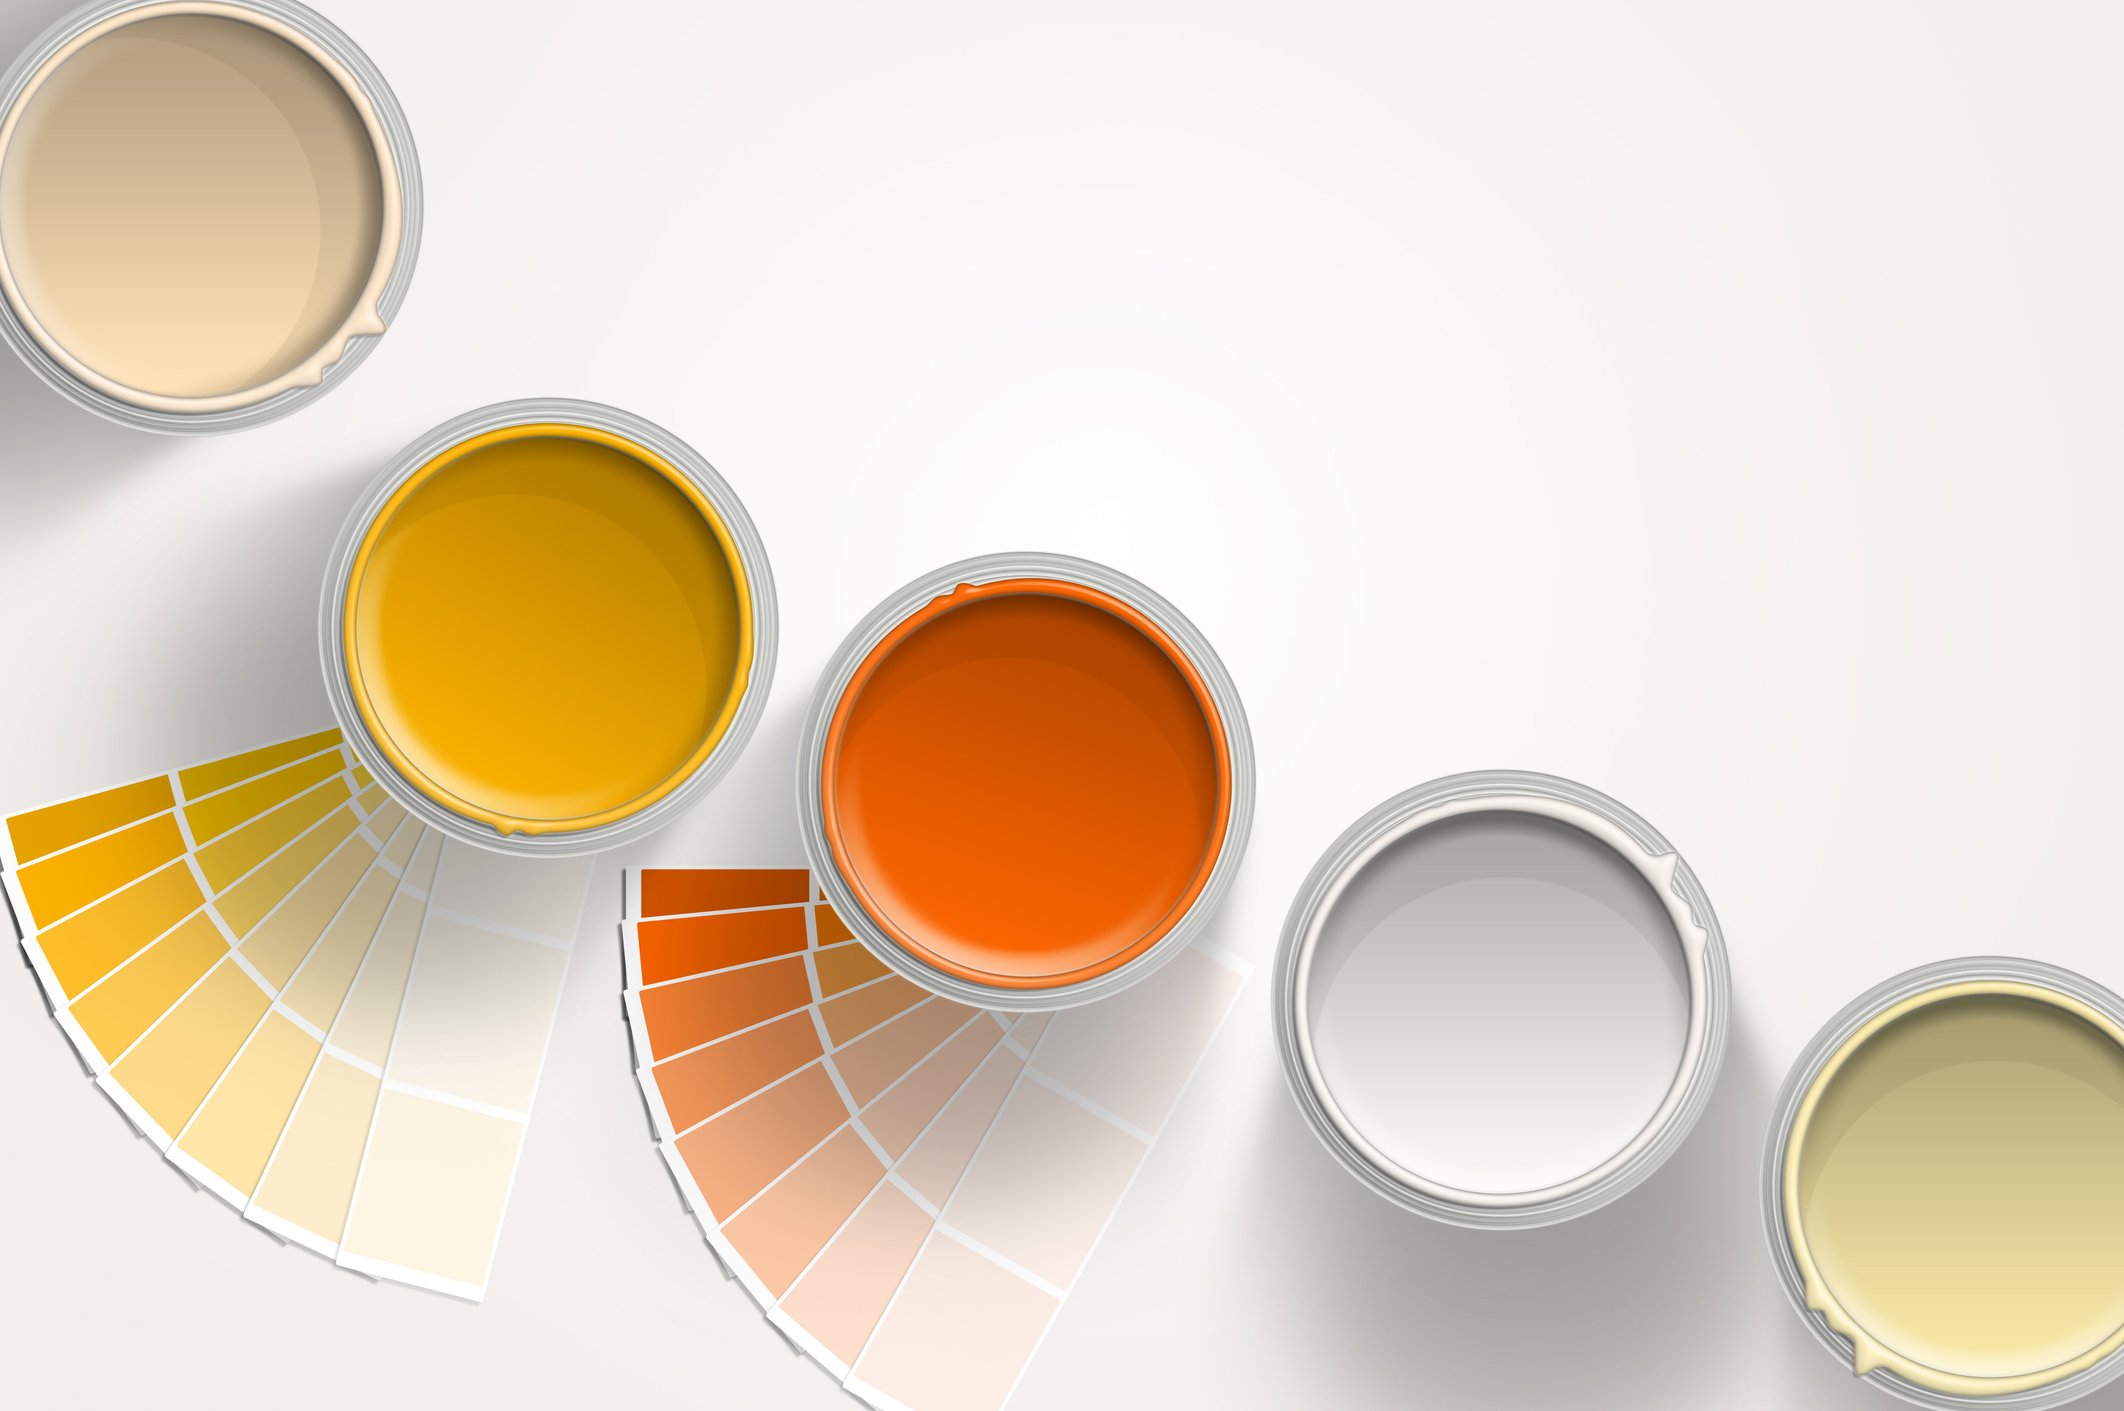 Τα 5 χρώματα που πρέπει να επιλέξεις αν θες να βάψεις το σπίτι σου για να αναβαθμίσεις την διακόσμηση σου 